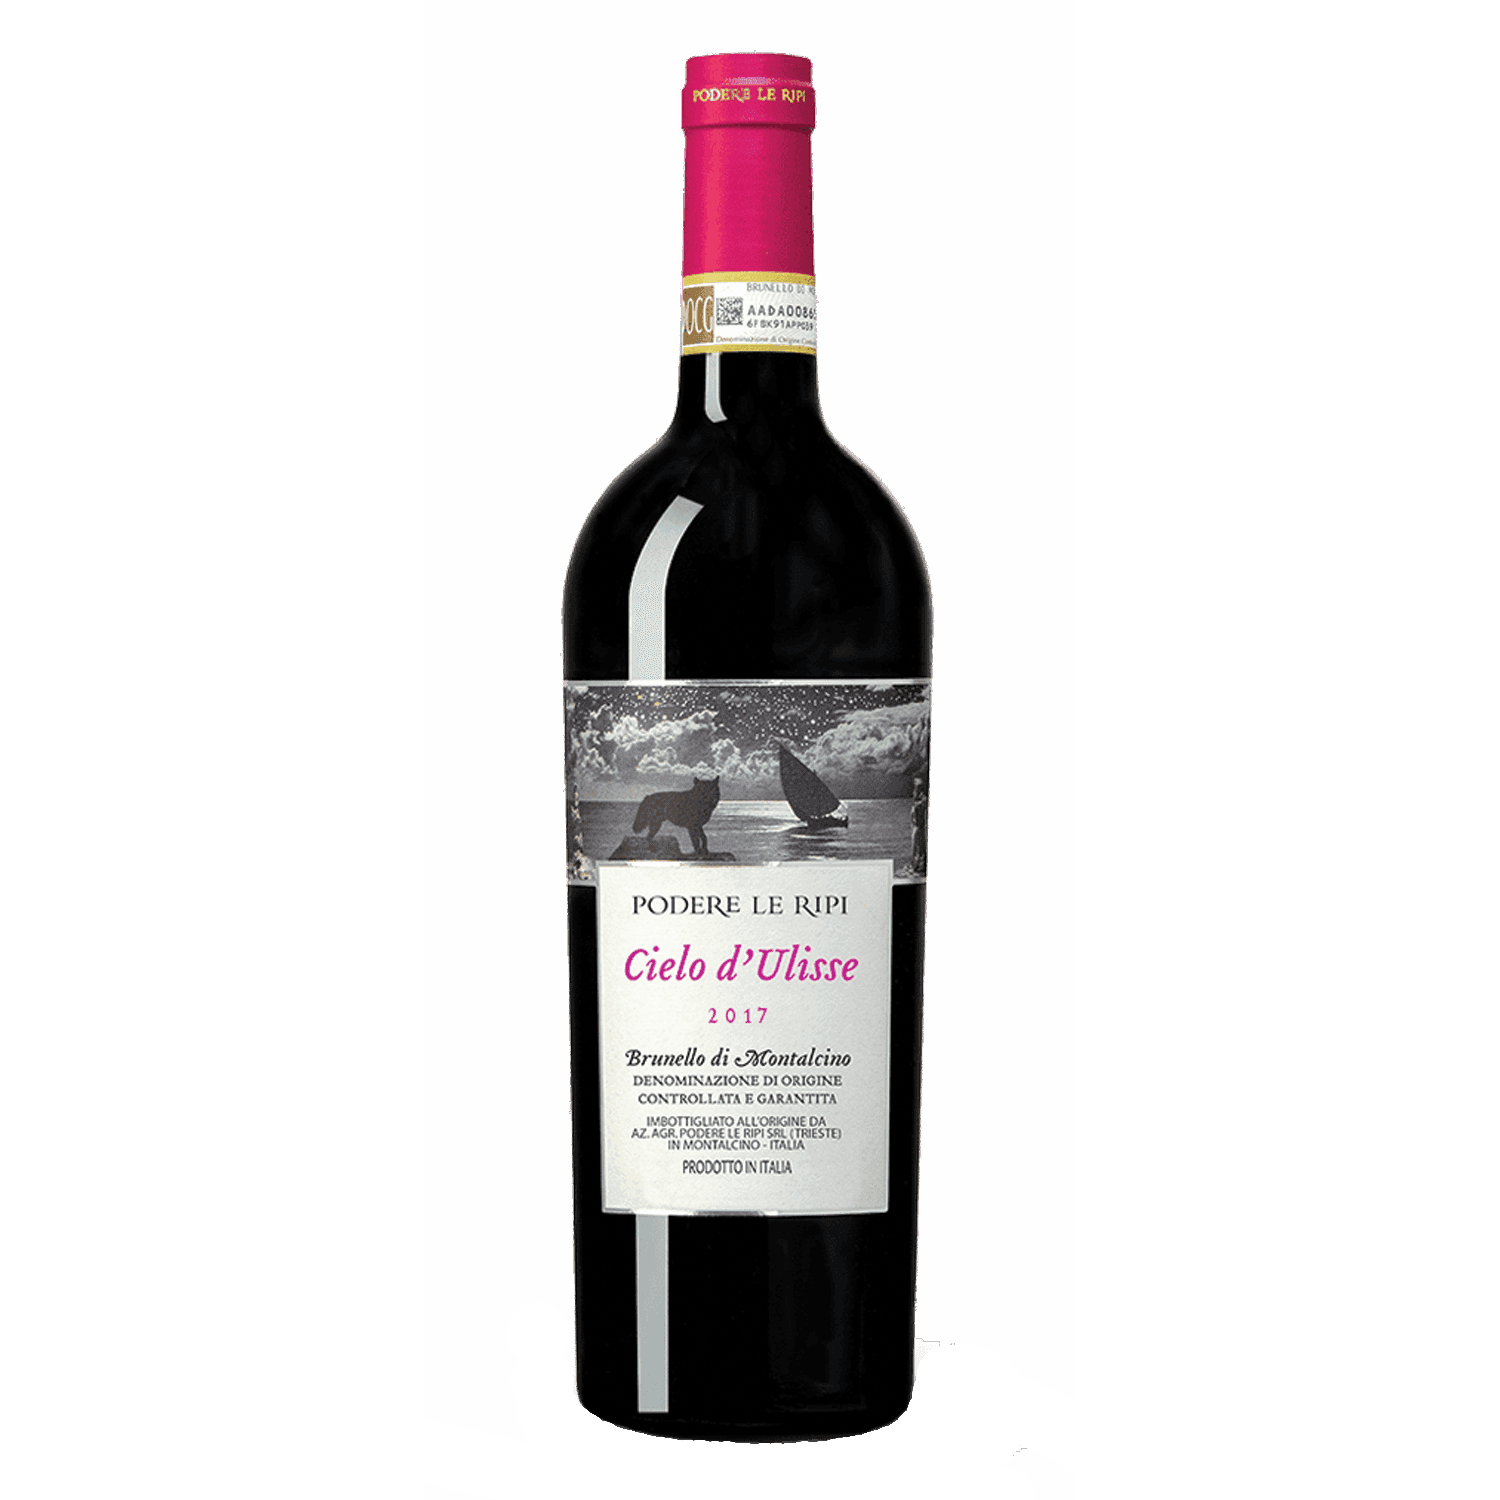 PODERE LE RIPI Brunello di Montalcino Cielo d'Ulisse Crveno vino, 2016, 0.75l